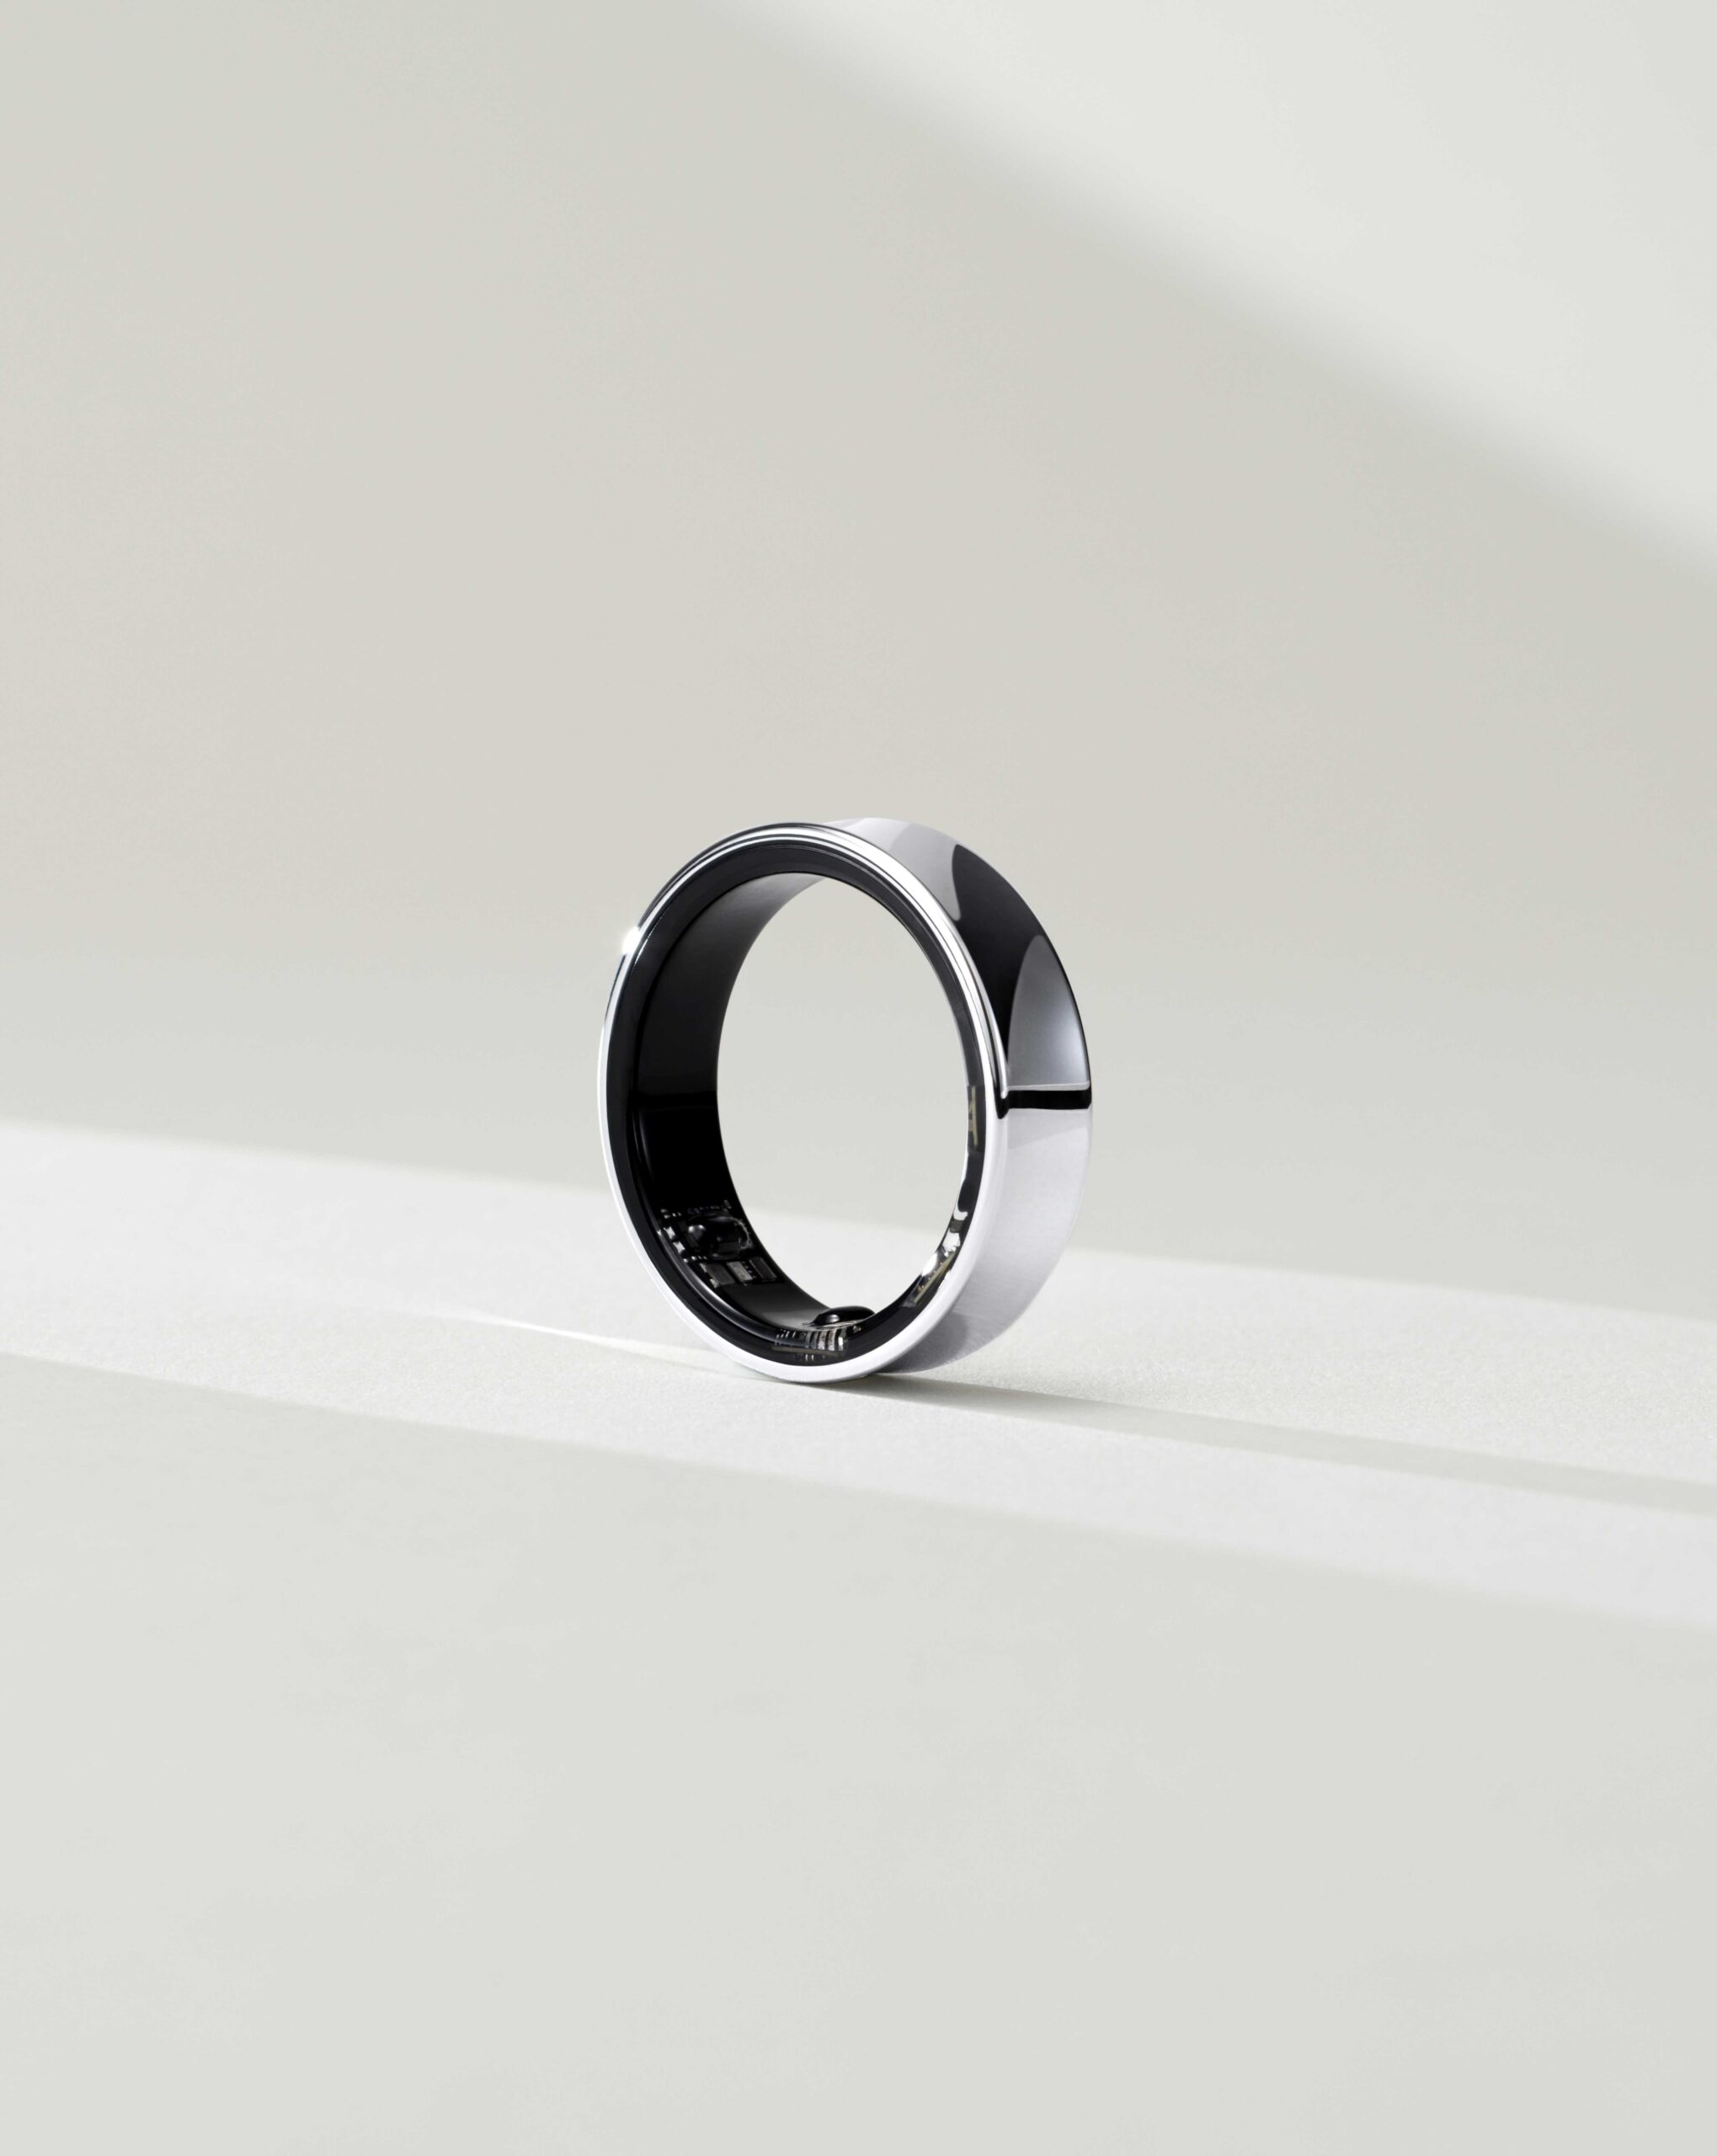 Samsung presenta il “Galaxy Ring” – un accessorio intelligente